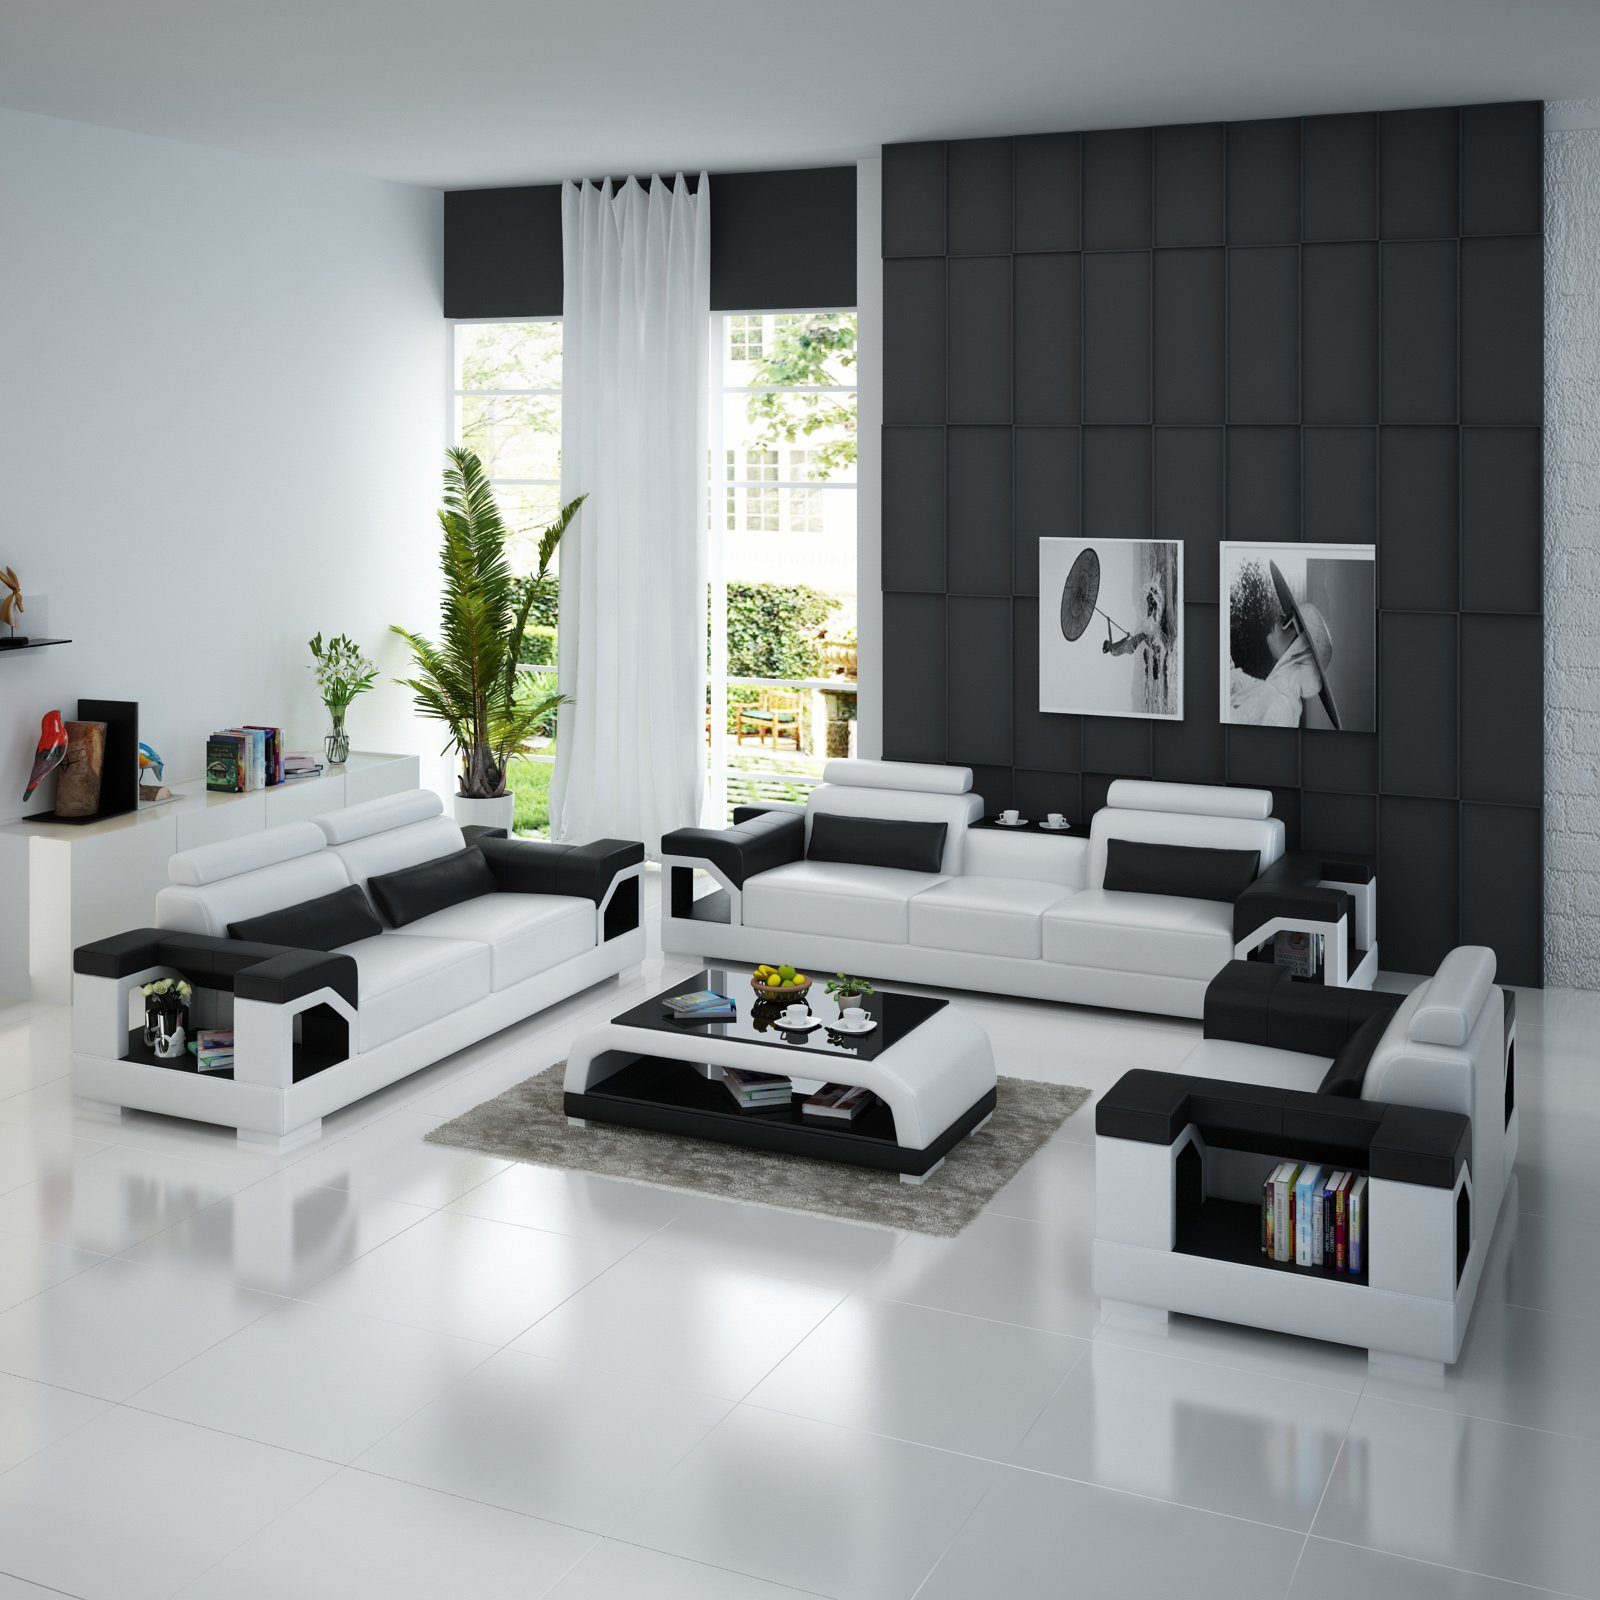 JVmoebel 321 Design usb Sofagarnitur Modern Ledersofa Wohnzimmer-Set, Garnitur Weiß/Schwarz Sofa Couch